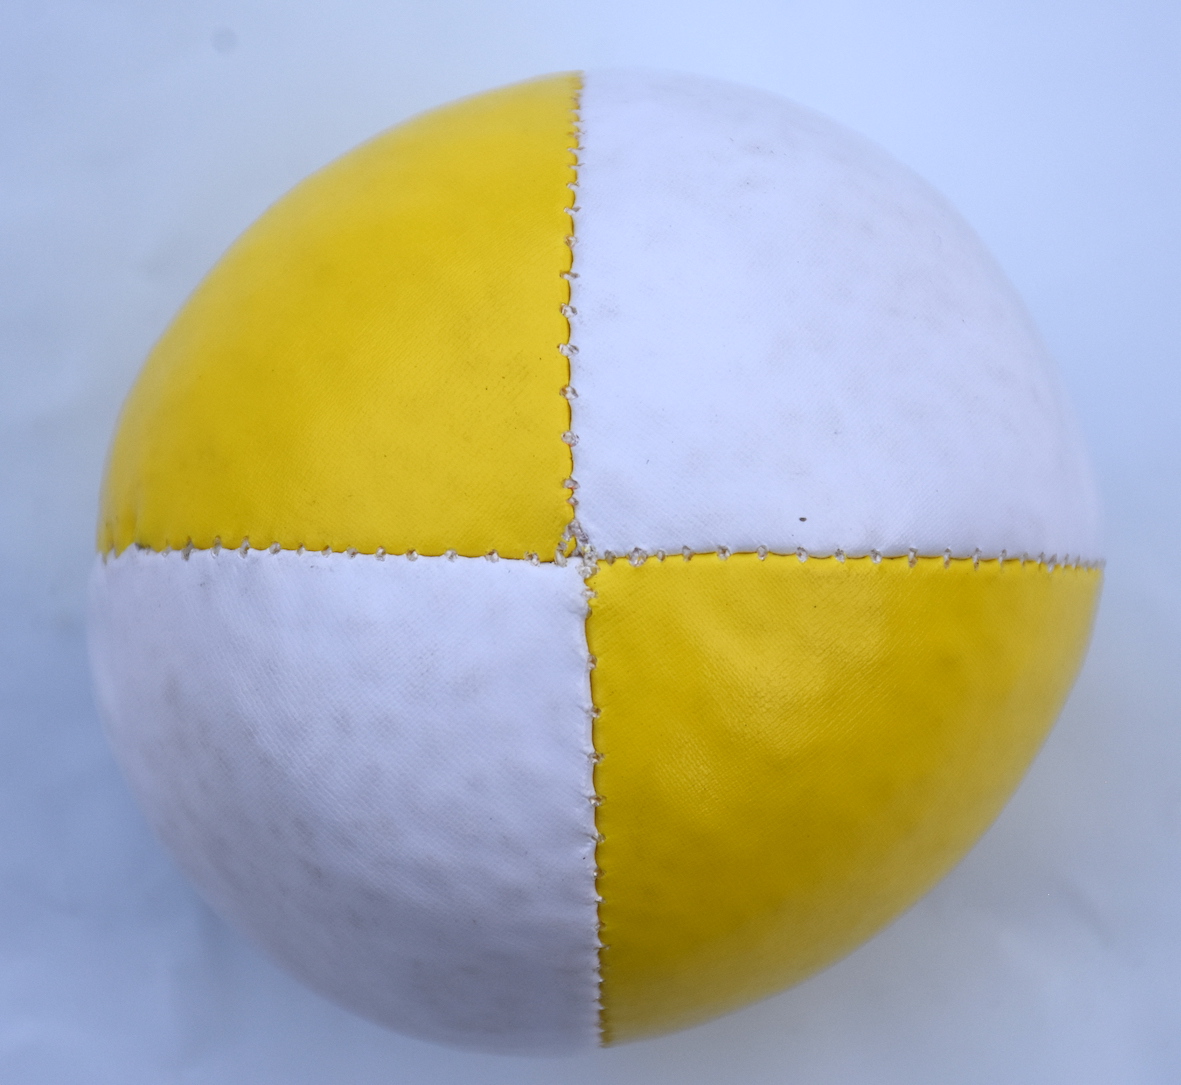 Softball 130g white/yellow